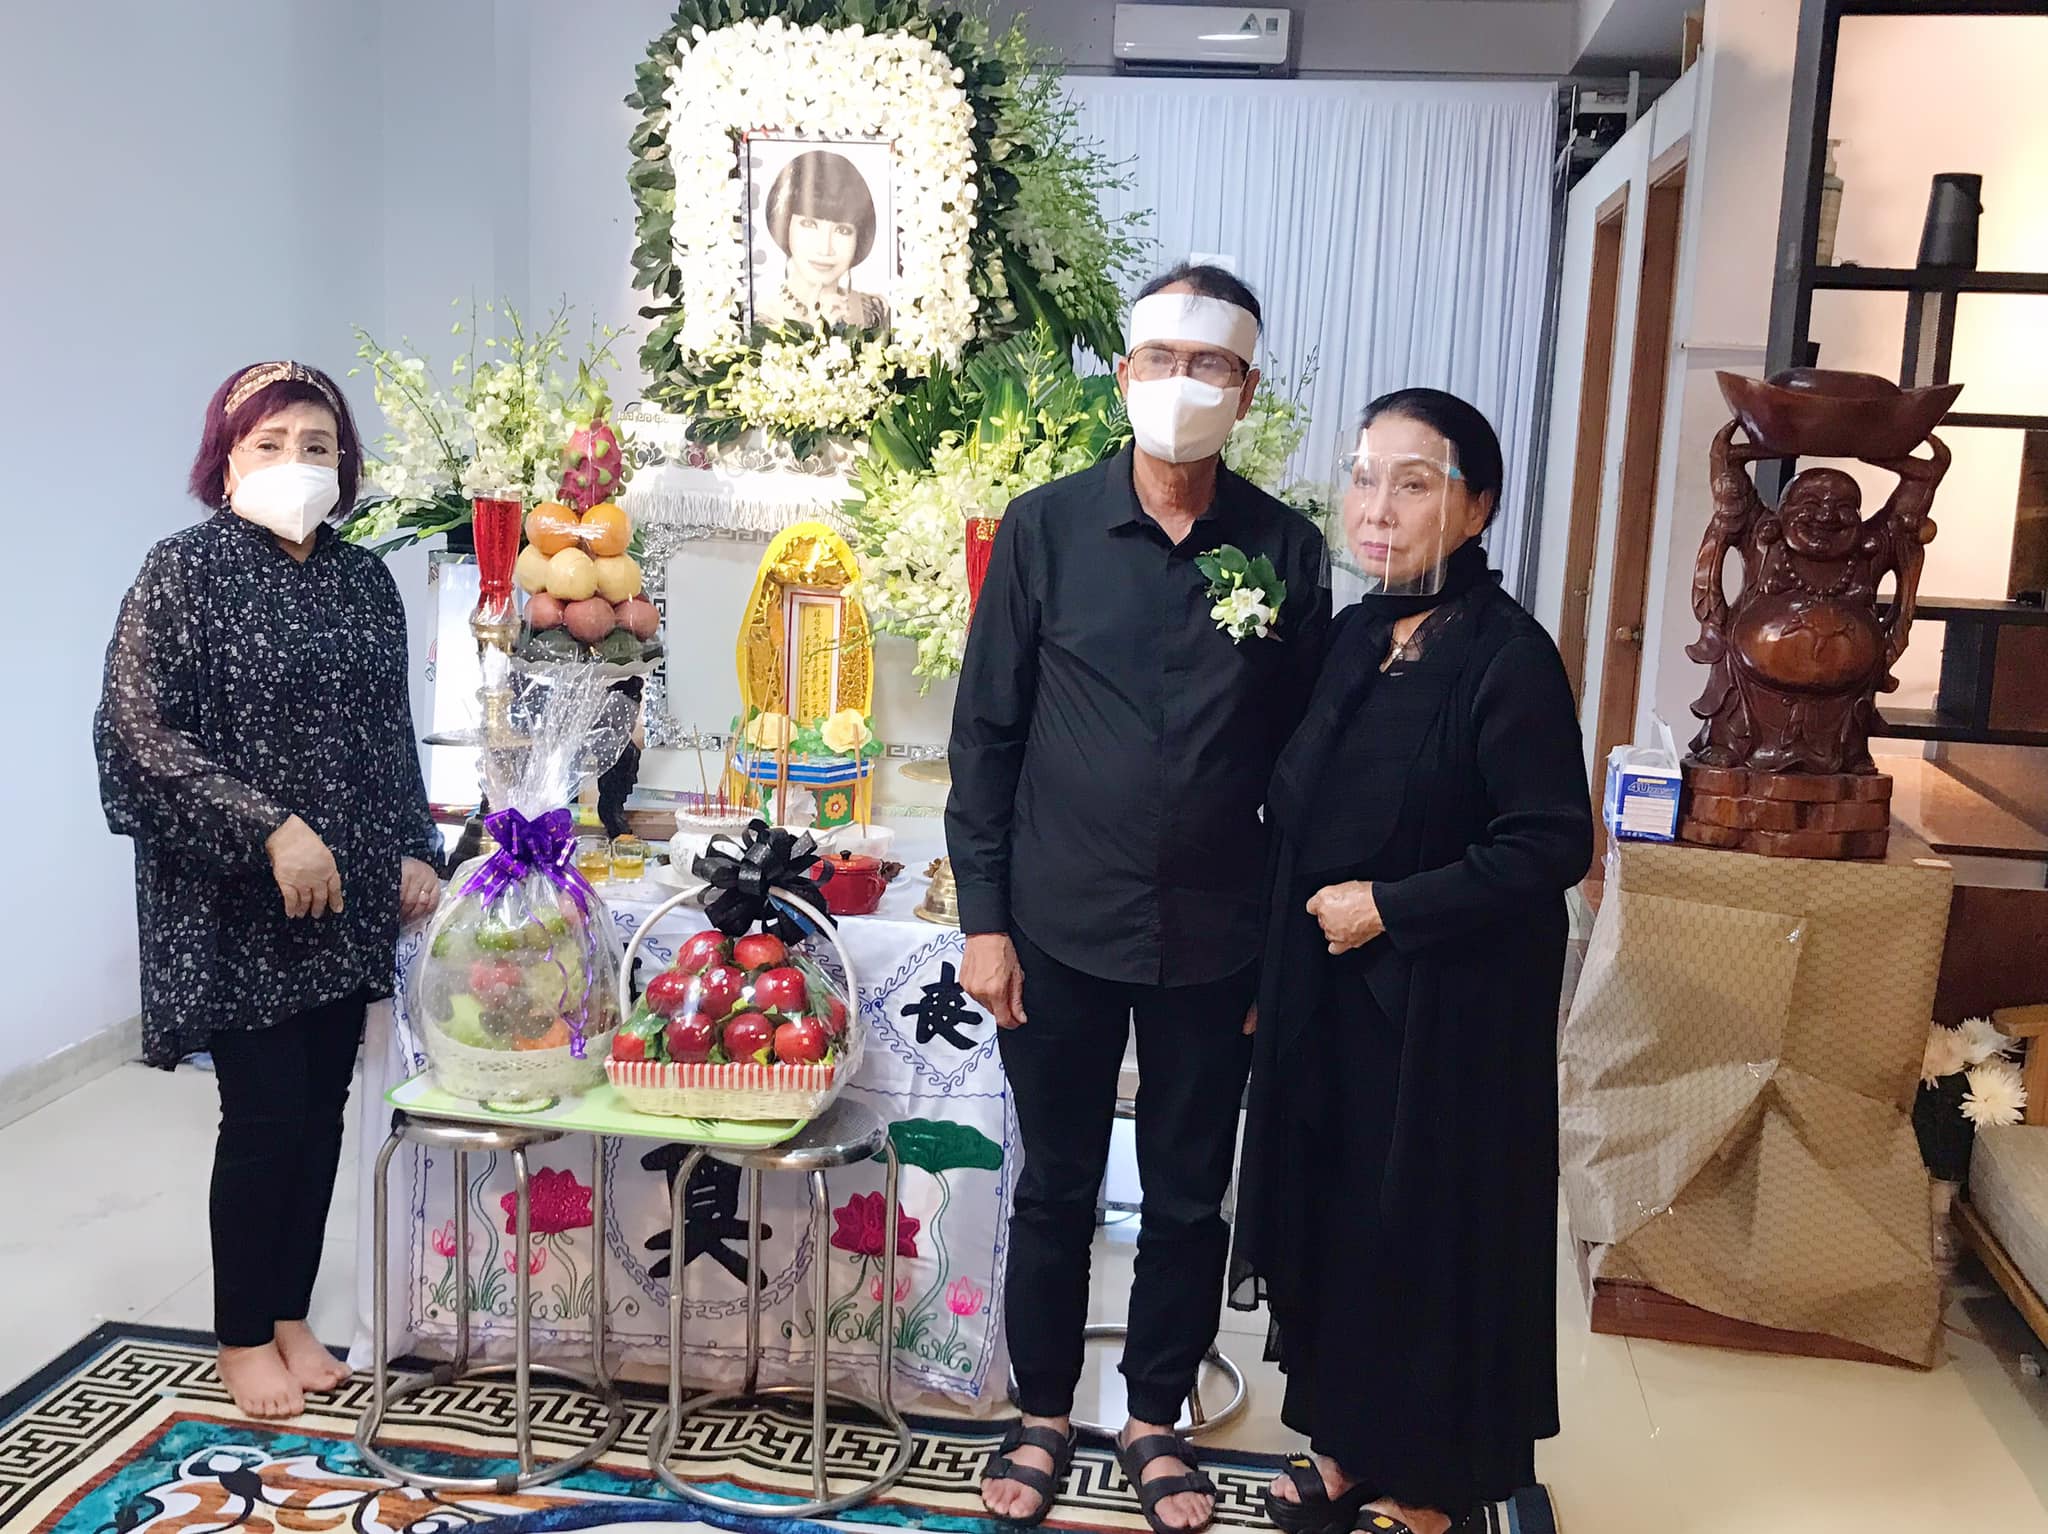 NSND Bạch Tuyết và NSND Lệ Thủy đến lễ tang của cố NSUT Thanh Kim Huệ từ sớm để đọc kinh và tiễn biệt người em thân thiết